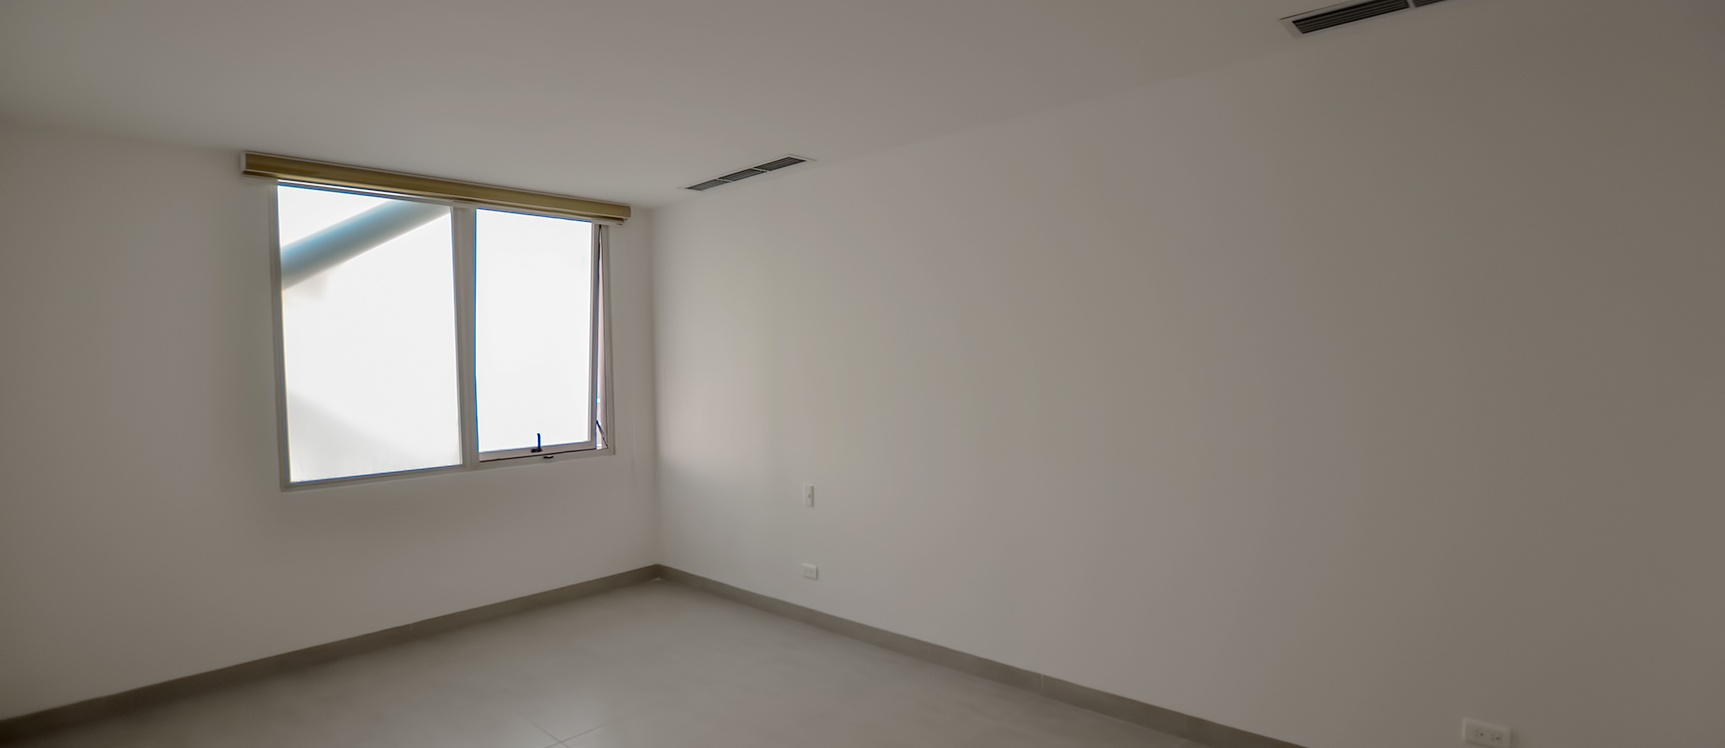 GeoBienes - Suite en venta en Edificio Quo sector norte de Guayaquil - Plusvalia Guayaquil Casas de venta y alquiler Inmobiliaria Ecuador